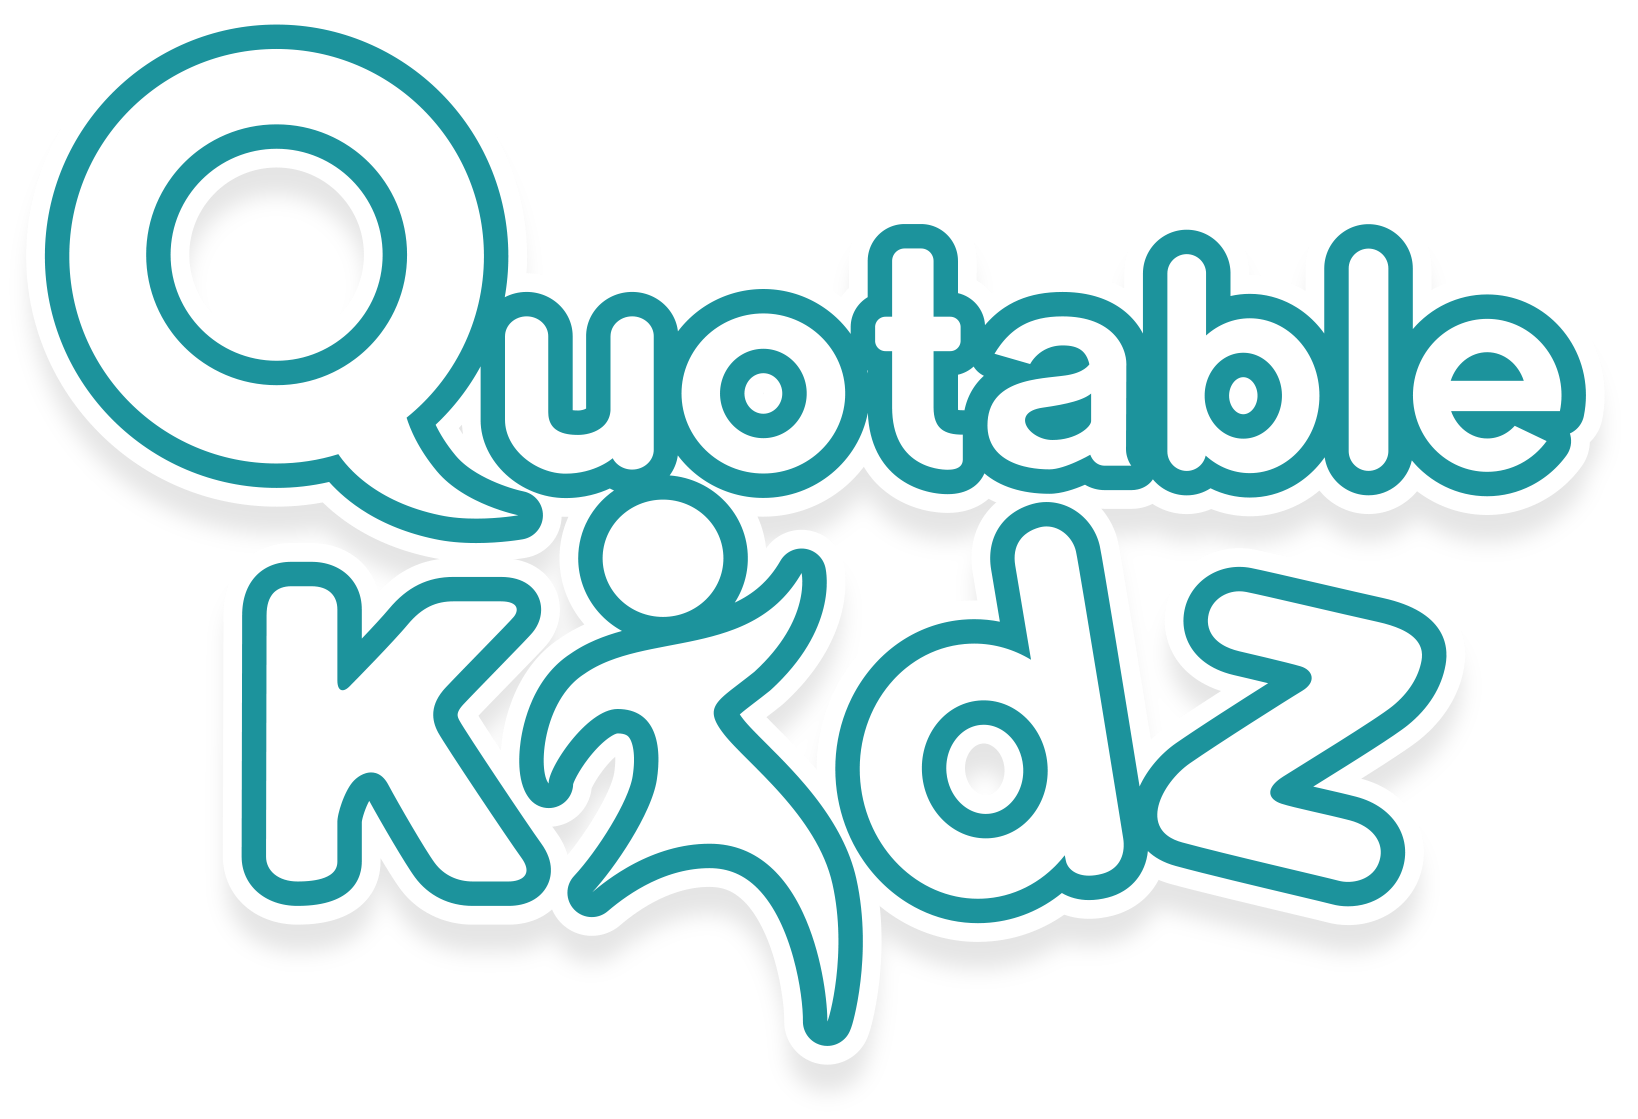 QuotableKidz logo